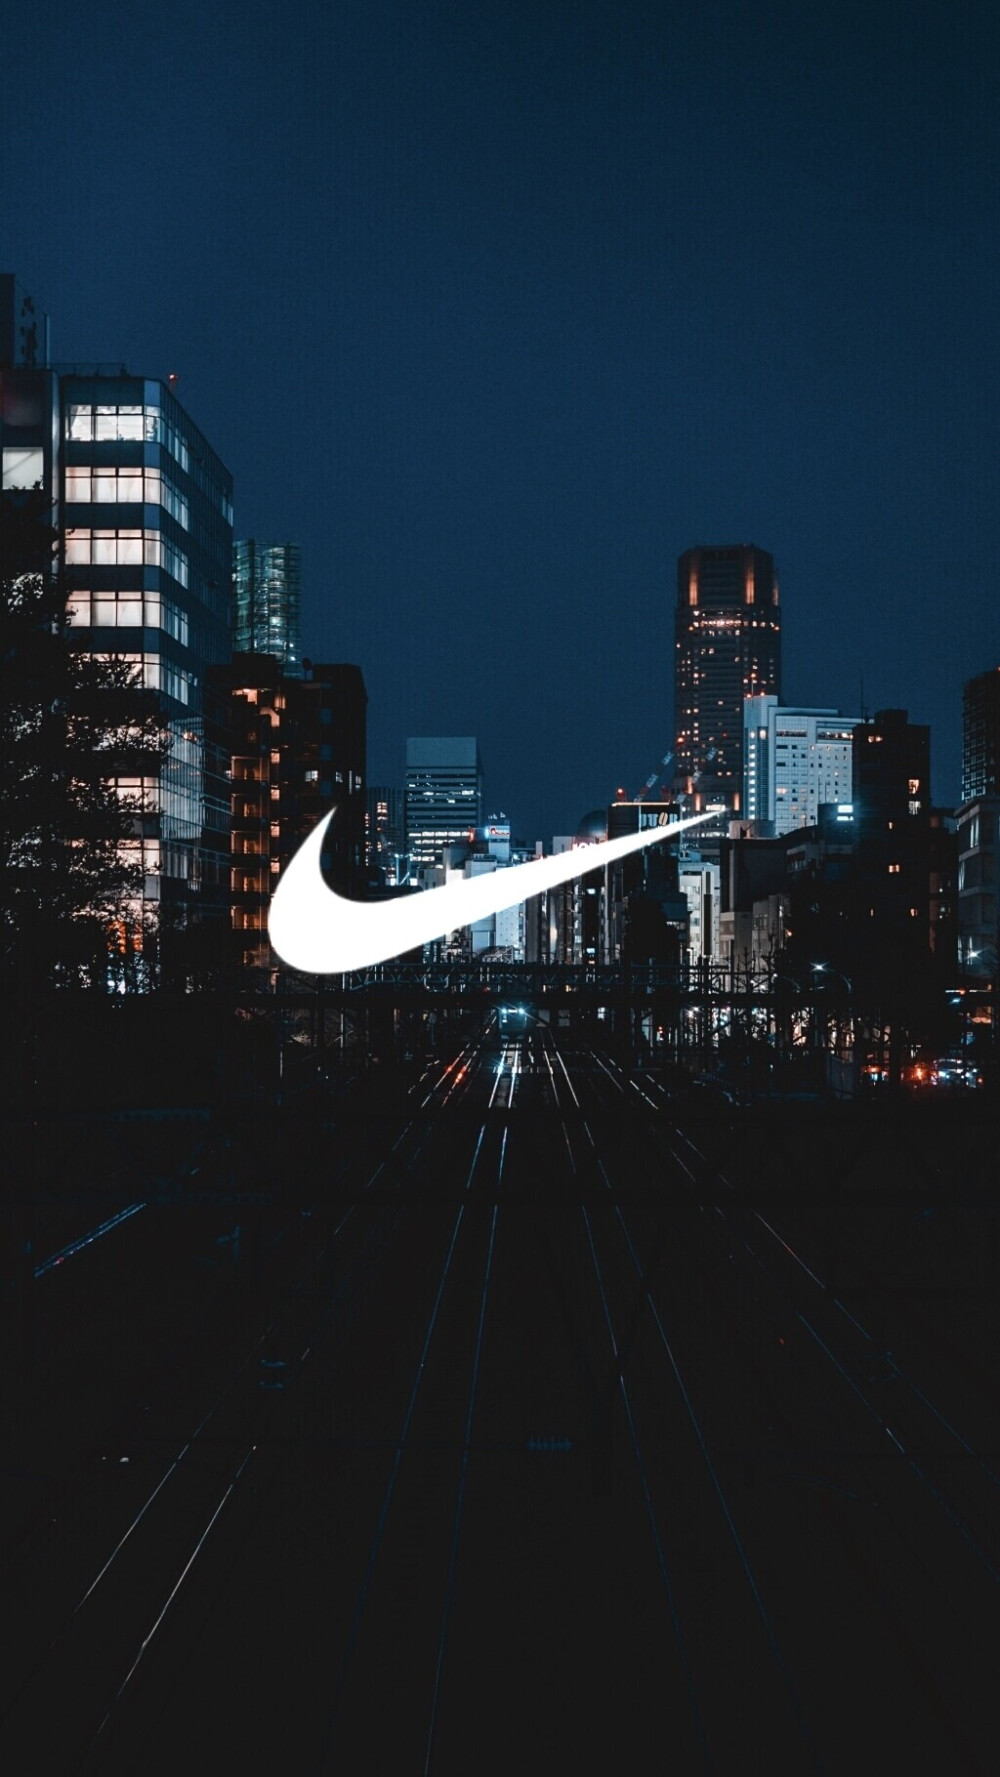 Nike背景手机图片